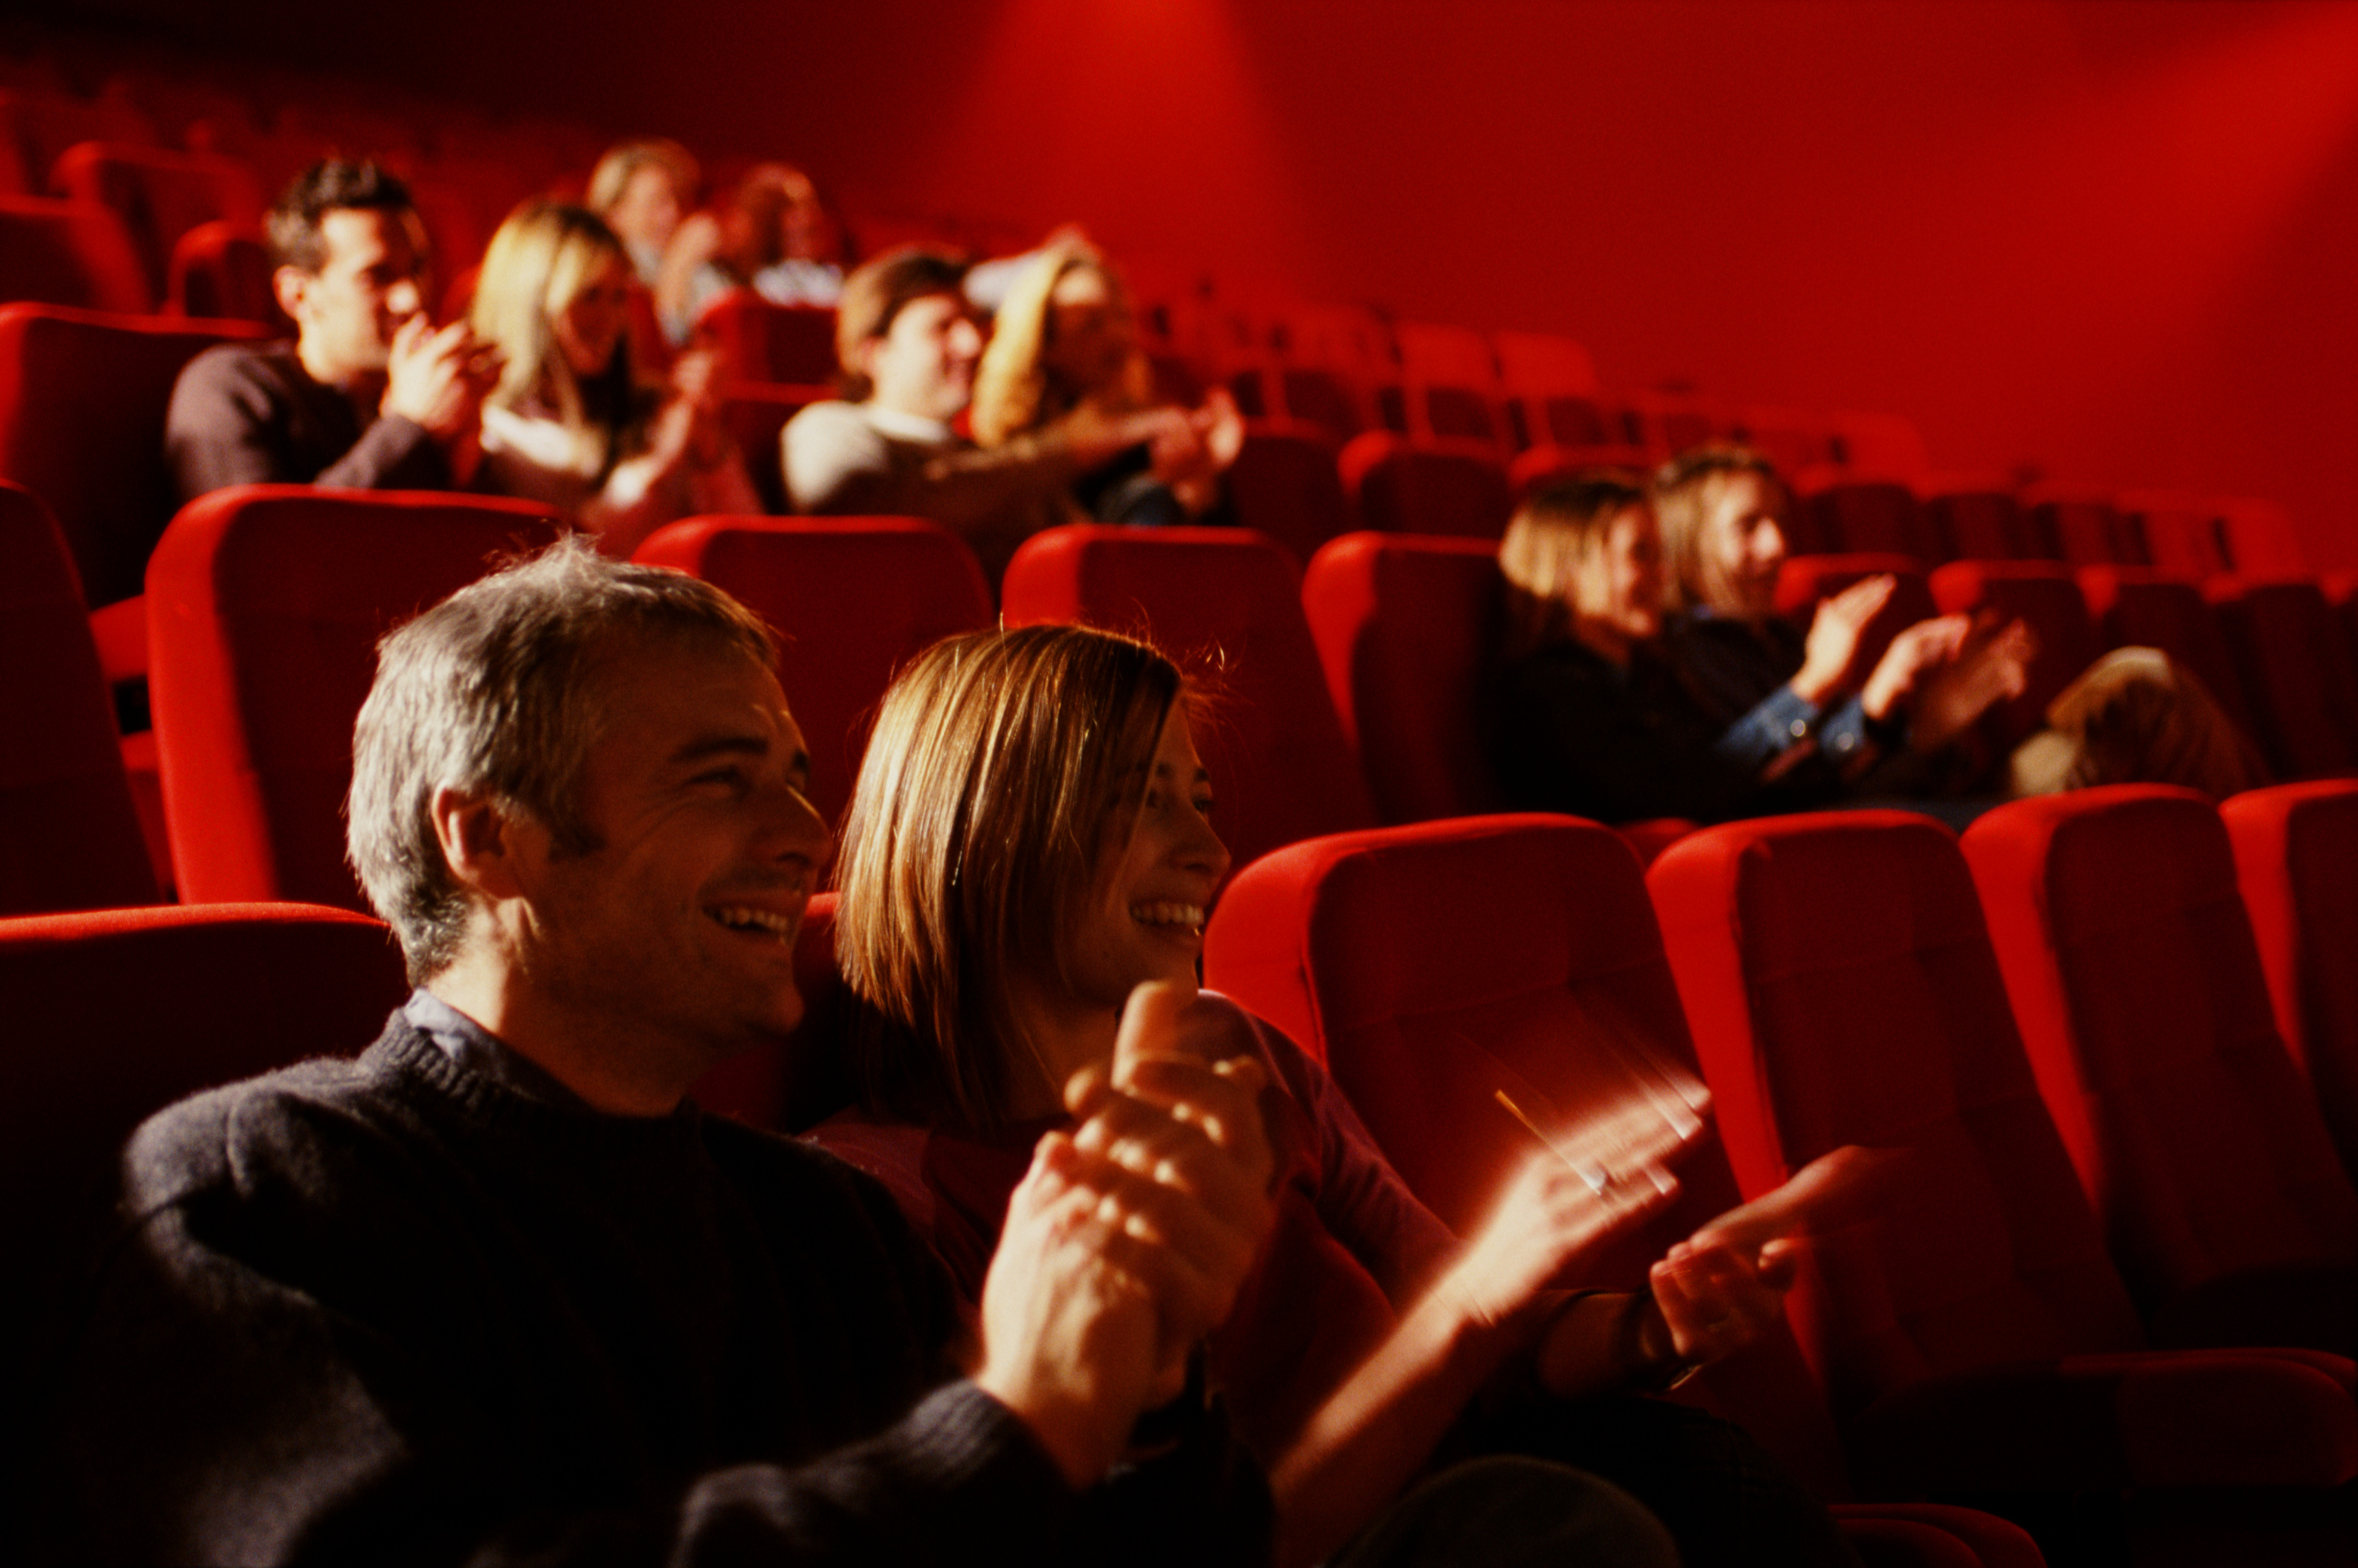 Количество зрителей в театре. Поход в театр. Люди сидят в кинотеатре. Зрители в зале. Зрительный зал с людьми.